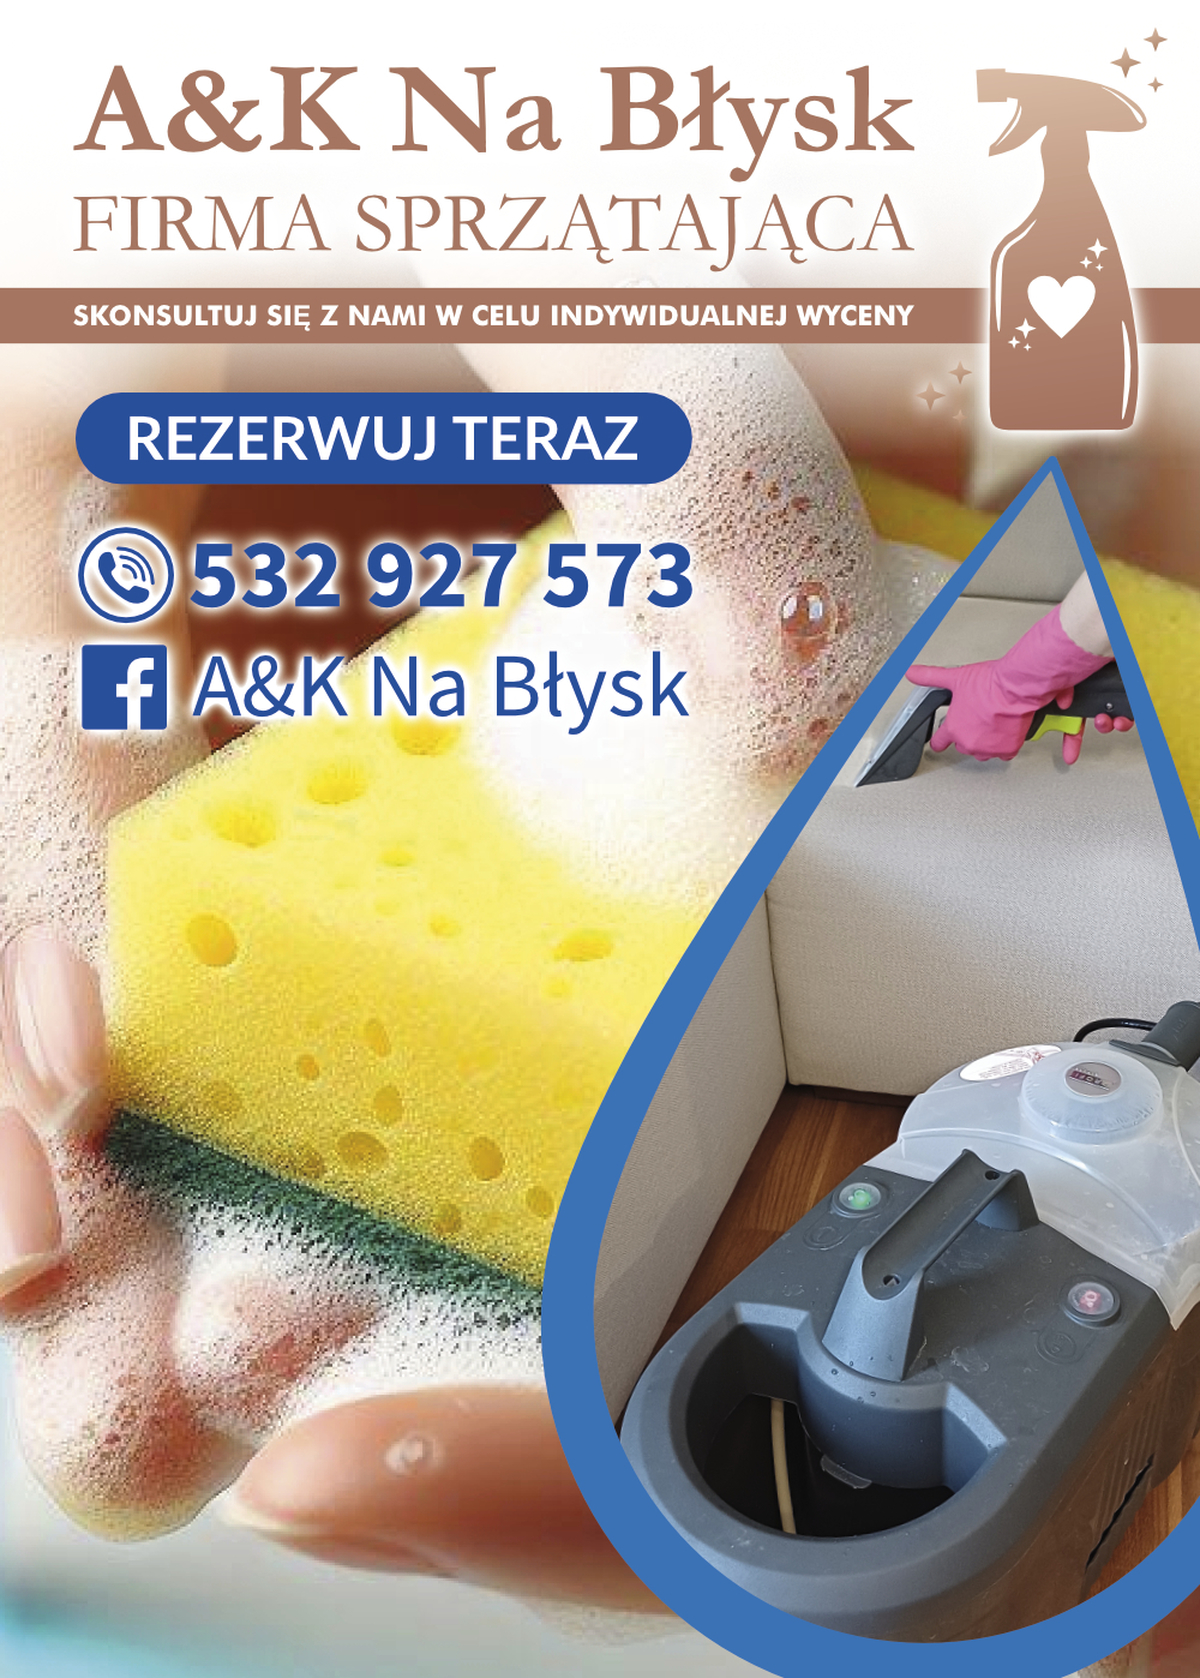 A&K Na Błysk – Firma sprzątająca poleca się na przedświąteczne porządki